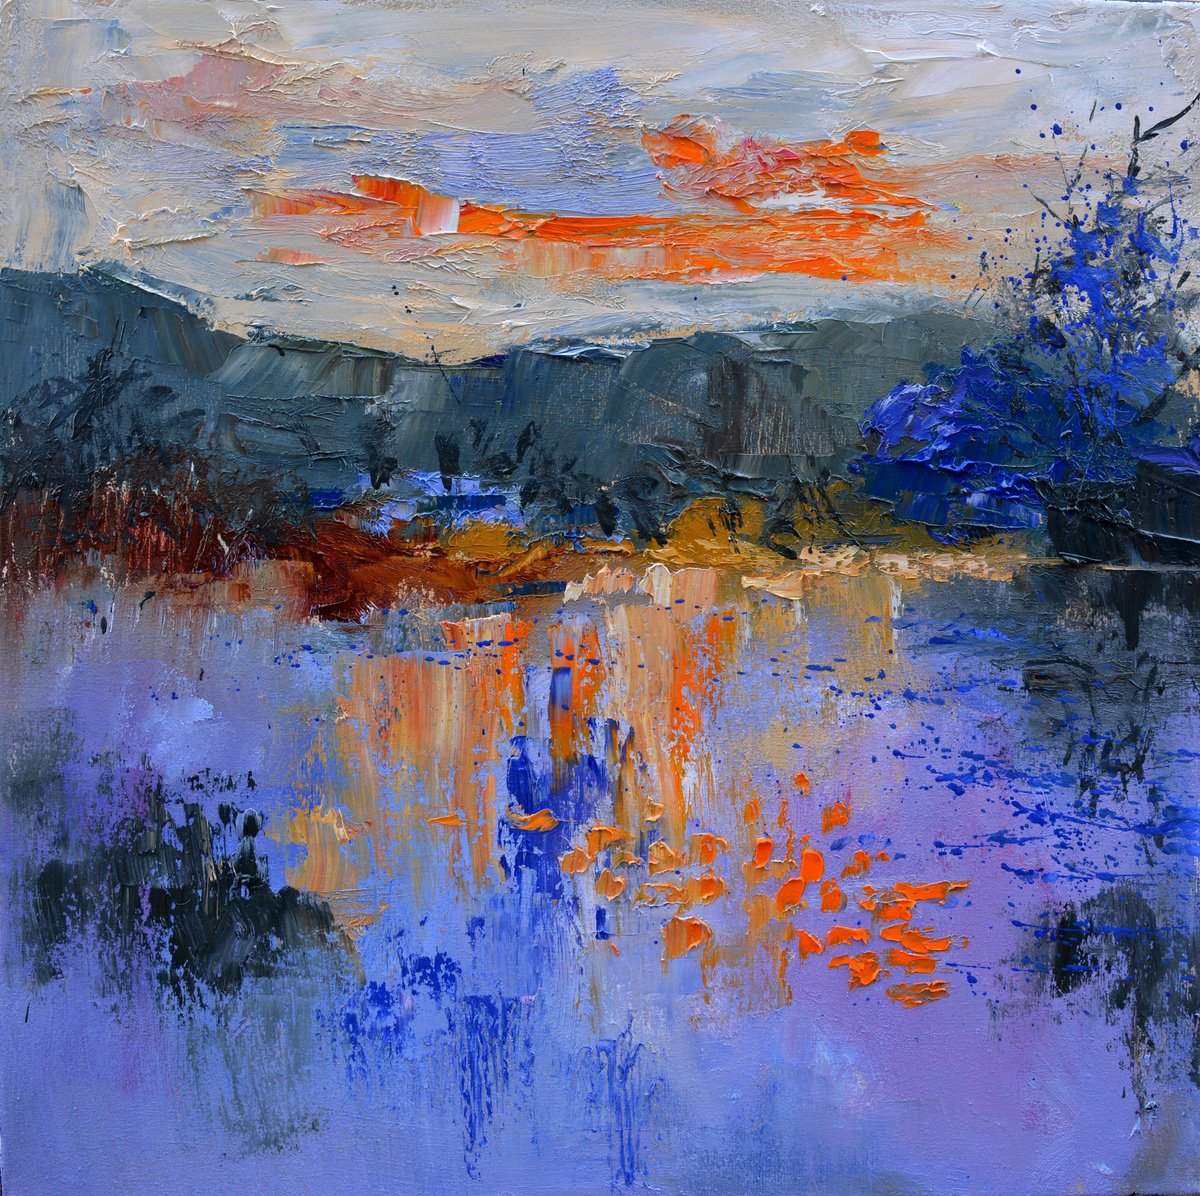 Blue lake 4420 by Pol Henry Ledent